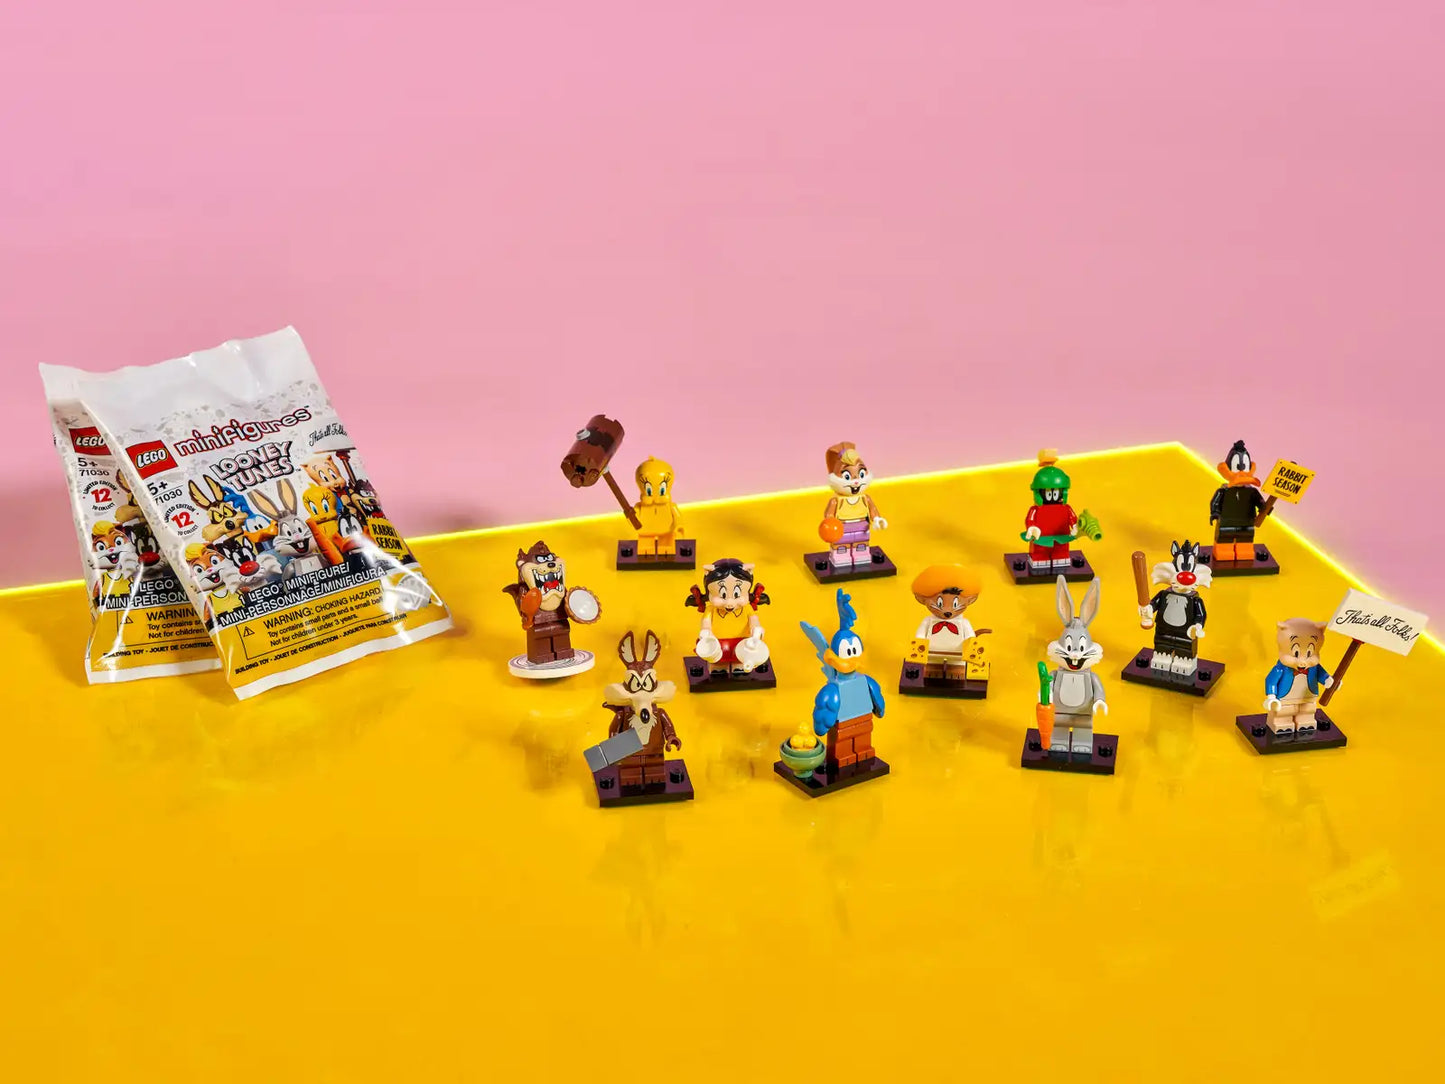 LEGO Minifigures Looney Tunes 71030